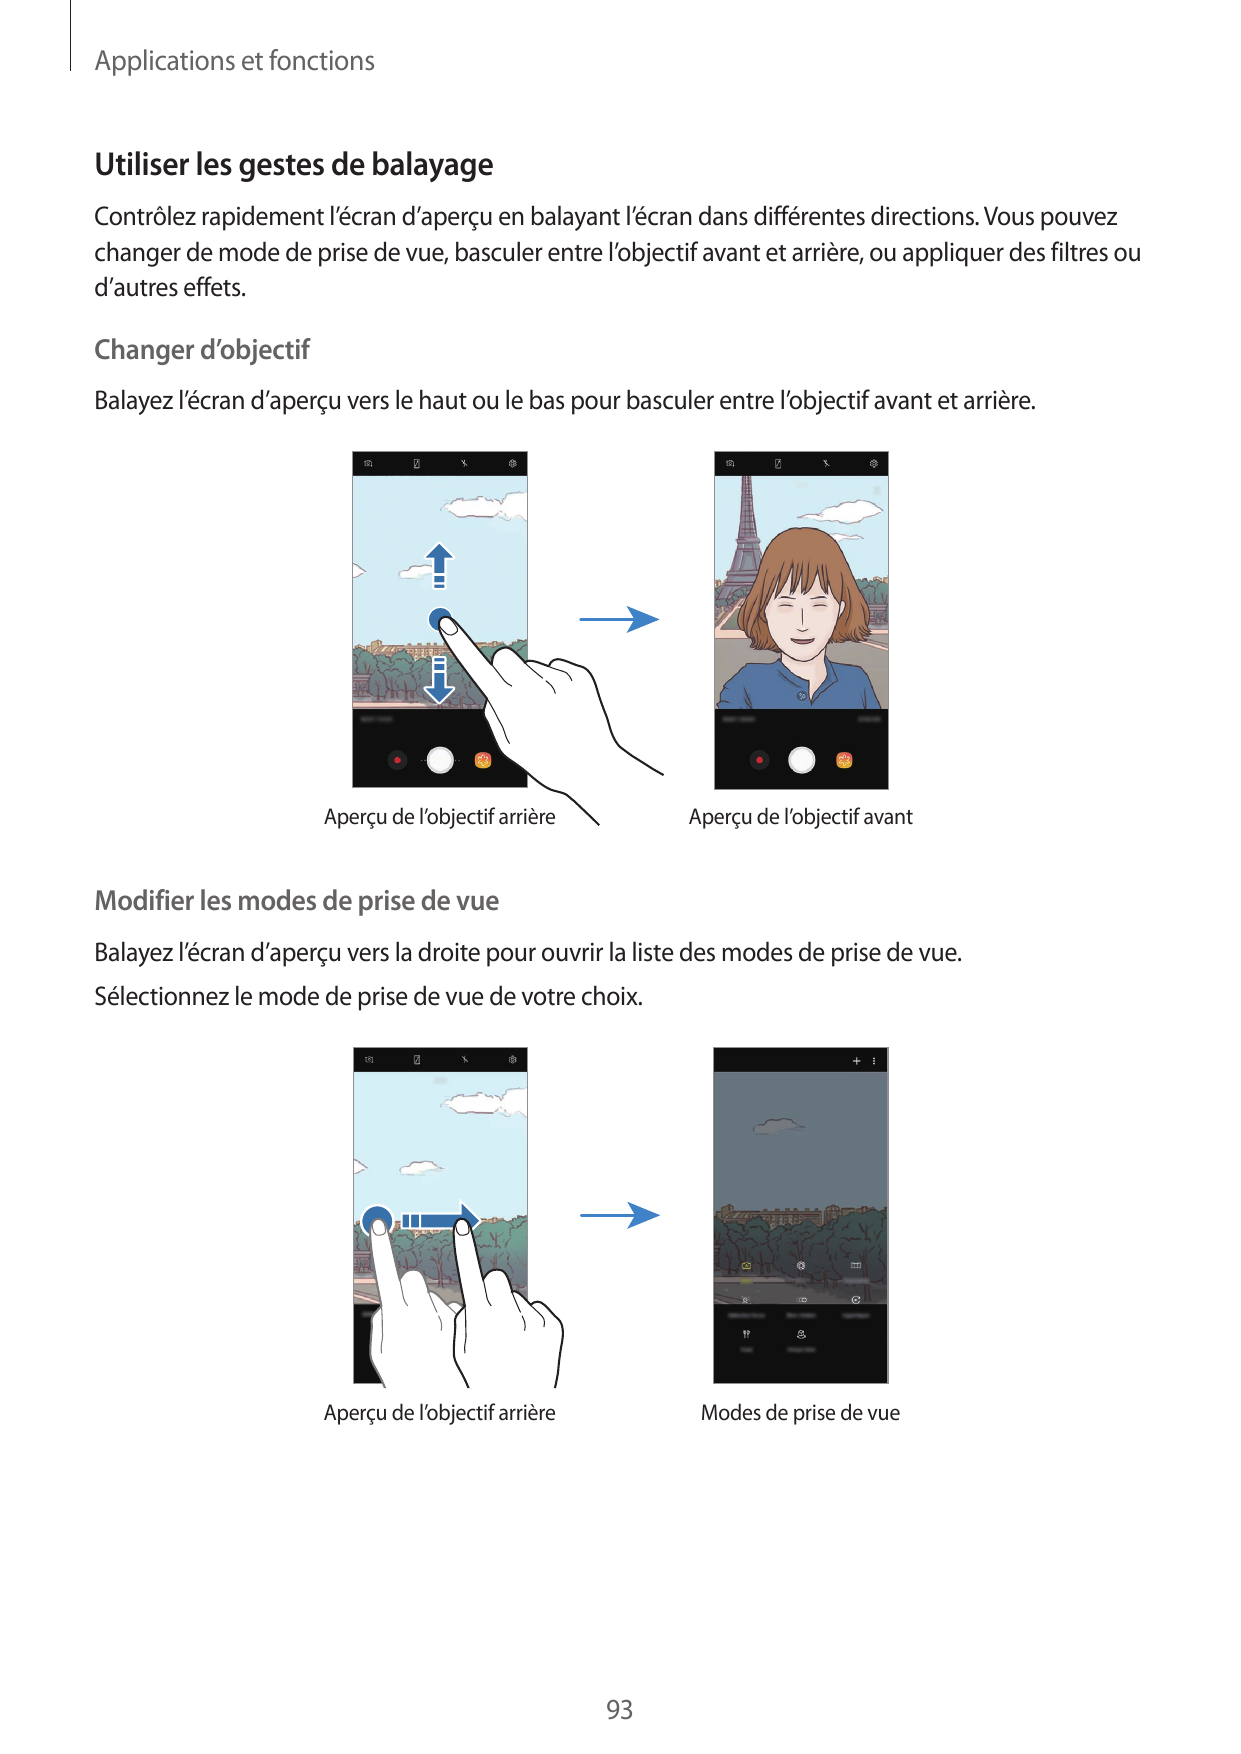 Applications et fonctionsUtiliser les gestes de balayageContrôlez rapidement l’écran d’aperçu en balayant l’écran dans différent